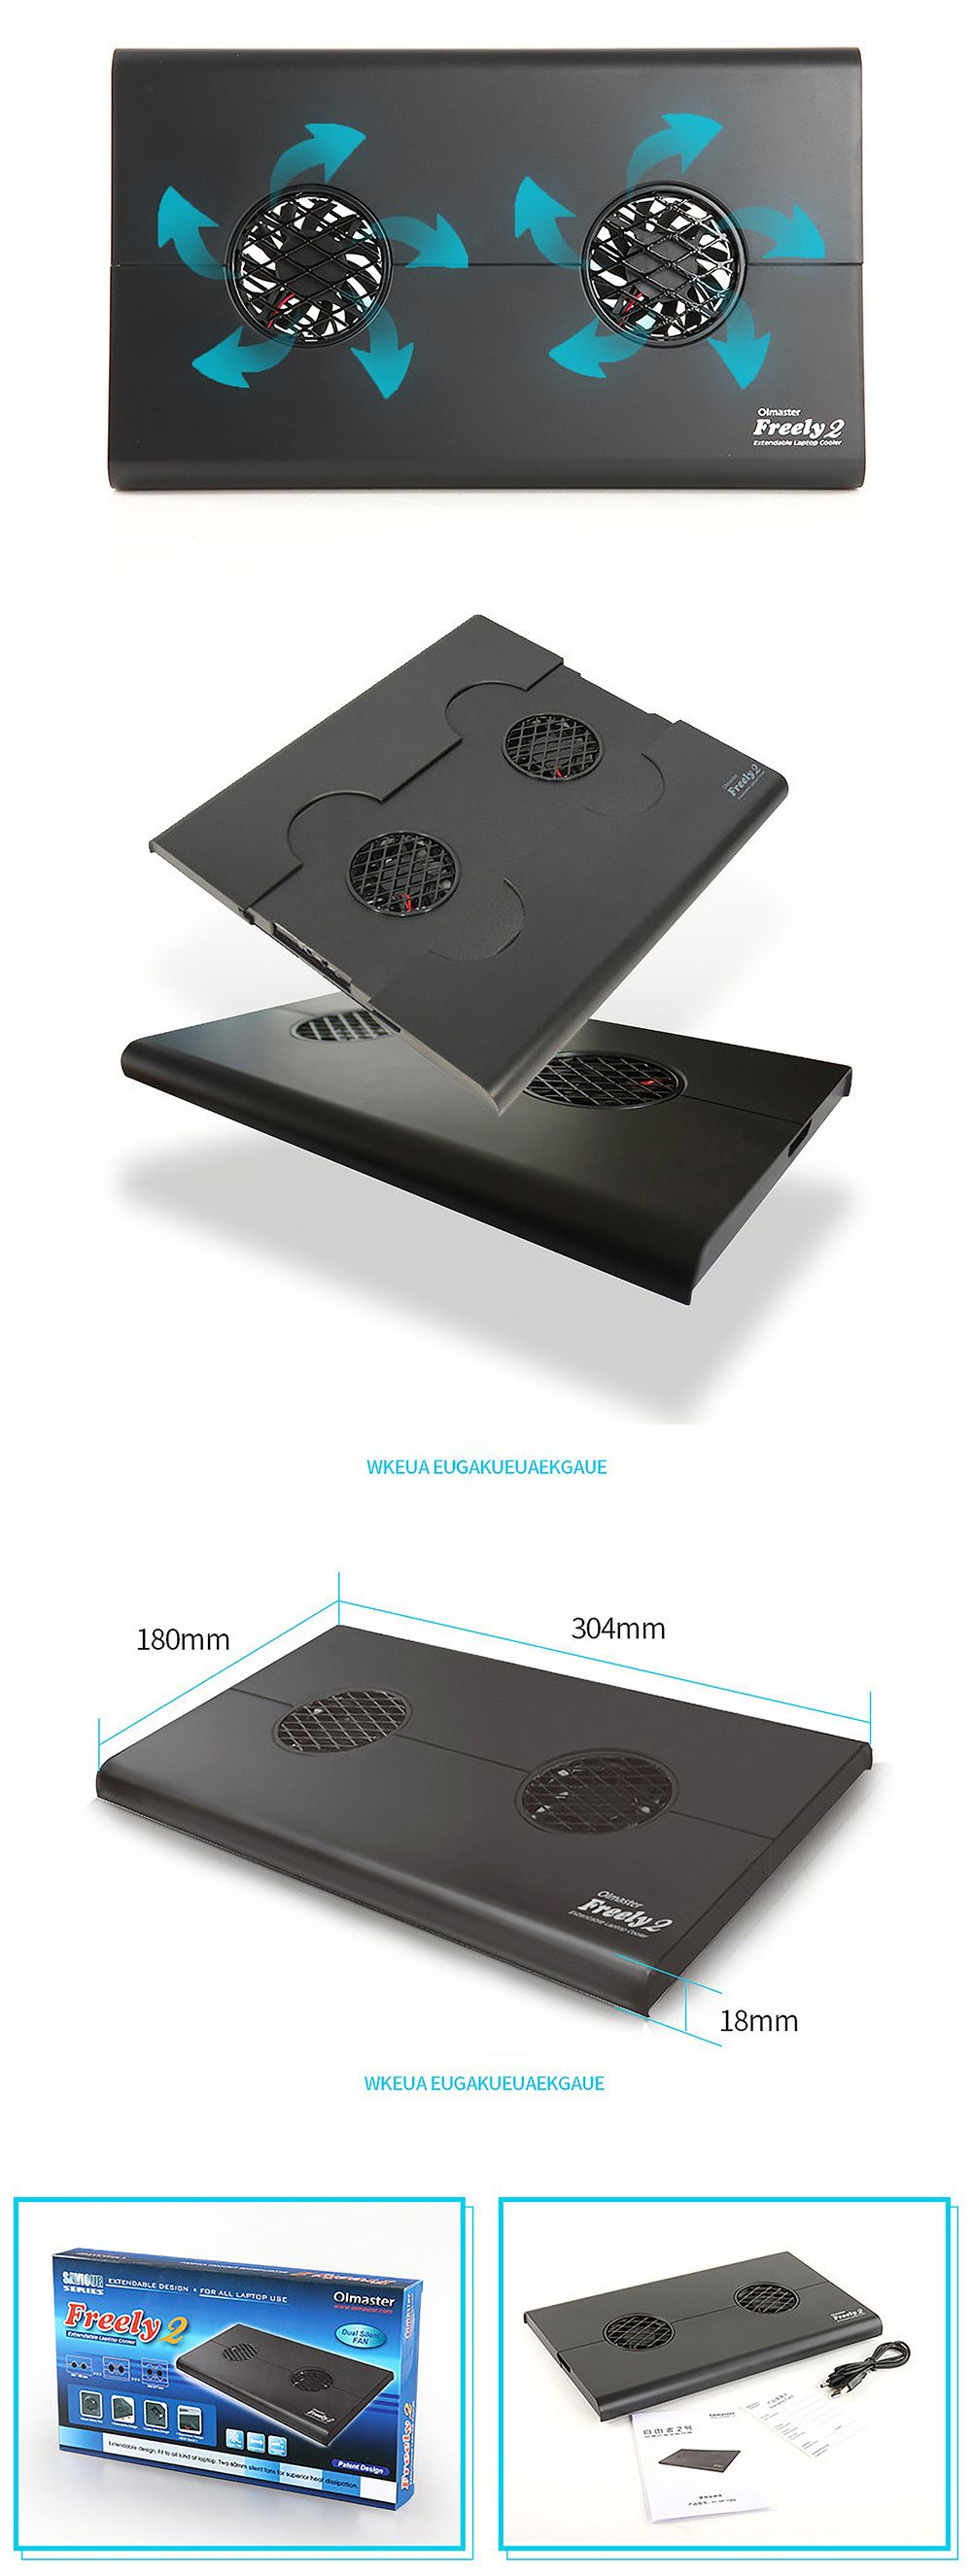 OImaster-Pull-Fan-Notebook-Laptop-Cooler-Heat-Dink-Laptop-Stand-Cooling-Pad-Cooling-Stand-with-2-Fan-1474705